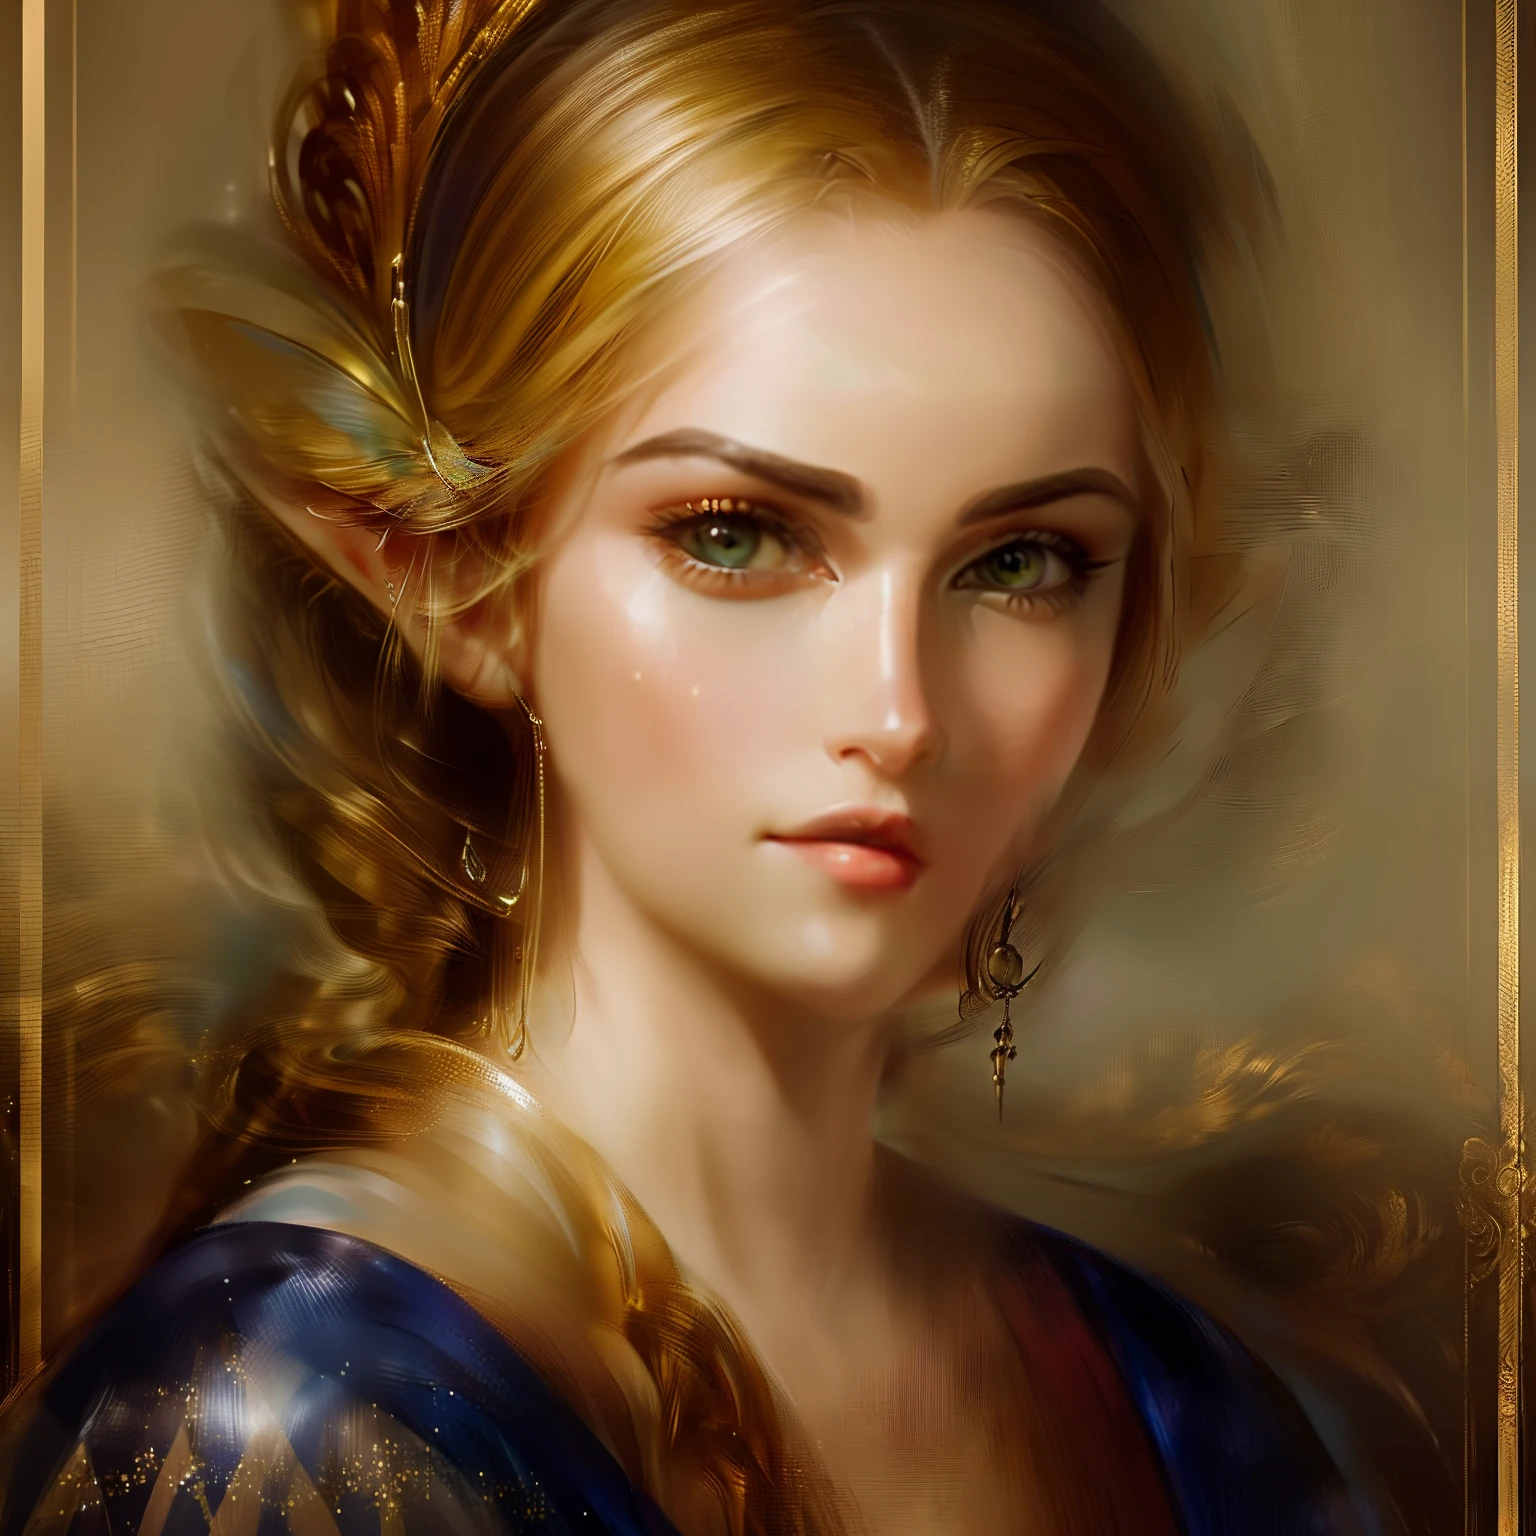 (основная часть, Высокое разрешение:1.3), белые волосы,(Студийный портрет кельтской эльфийской принцессы небесной женщины с рыжими волосами в профиль:1.2), (Его глубокие голубые глаза излучают мощное сияние:1.1), (Камера Никон Z7 II, Идеально подходит для съемки сложных деталей:1.2), (в паре с Nikon NIKKOR Z 85mm f/1.Медленный 8 с:1.2), (Безупречная кожа гоблина источает ощущение неземной красоты:1.1), (Ее длинные серебристые волосы изящно ниспадали каскадом:1.1), (Мягкий, Мягкое выражение украшало его лицо:1.1), (Акцент на очаровательном профиле эльфийской женщины:1.1), (Фон студии завораживающий черный, подчеркивая ваше присутствие:1.1), (Эльф украшен тонкими и изящными украшениями:1.1), (черный шерстяной костюм, облегающий ее шею:1.1), (Портрет, который отражает его таинственное очарование и элегантность:1.1), (Момент изящества и спокойной красоты:1.1), (Его уникальные и пленительные глаза затягивают зрителей в глубины его души:1.1), (Неподвластный времени портрет мифического существа в студии:1.1), (тонкая игра света и тени, подчеркивающая его черты:1.1), (идеальная гармония мистики и элегантности:1.1), (эльфийка, олицетворяющая нестареющую красоту:1.1), (Изображение, которое переносит зрителей в царство фантазии и чудес:1.1), (Безупречное освещение студии, подчеркивающее каждую ее деталь:1.1), (Завораживающее и безмятежное изображение неземного существа:1.1), (Мгновение, запечатленное во времени, Где фантазия встречается с реальностью:1.1), (обстановка студии придает портрету ощущение вневременности:1.1), (Портрет эльфийки, которая очаровывает своим очаровательным присутствием:1.1), (Сочетание его ярких глаз и мягкого выражения лица создает потустороннюю атмосферу:1.1), (Студийный портрет, демонстрирующий красоту и очарование мифических существ:1.1)